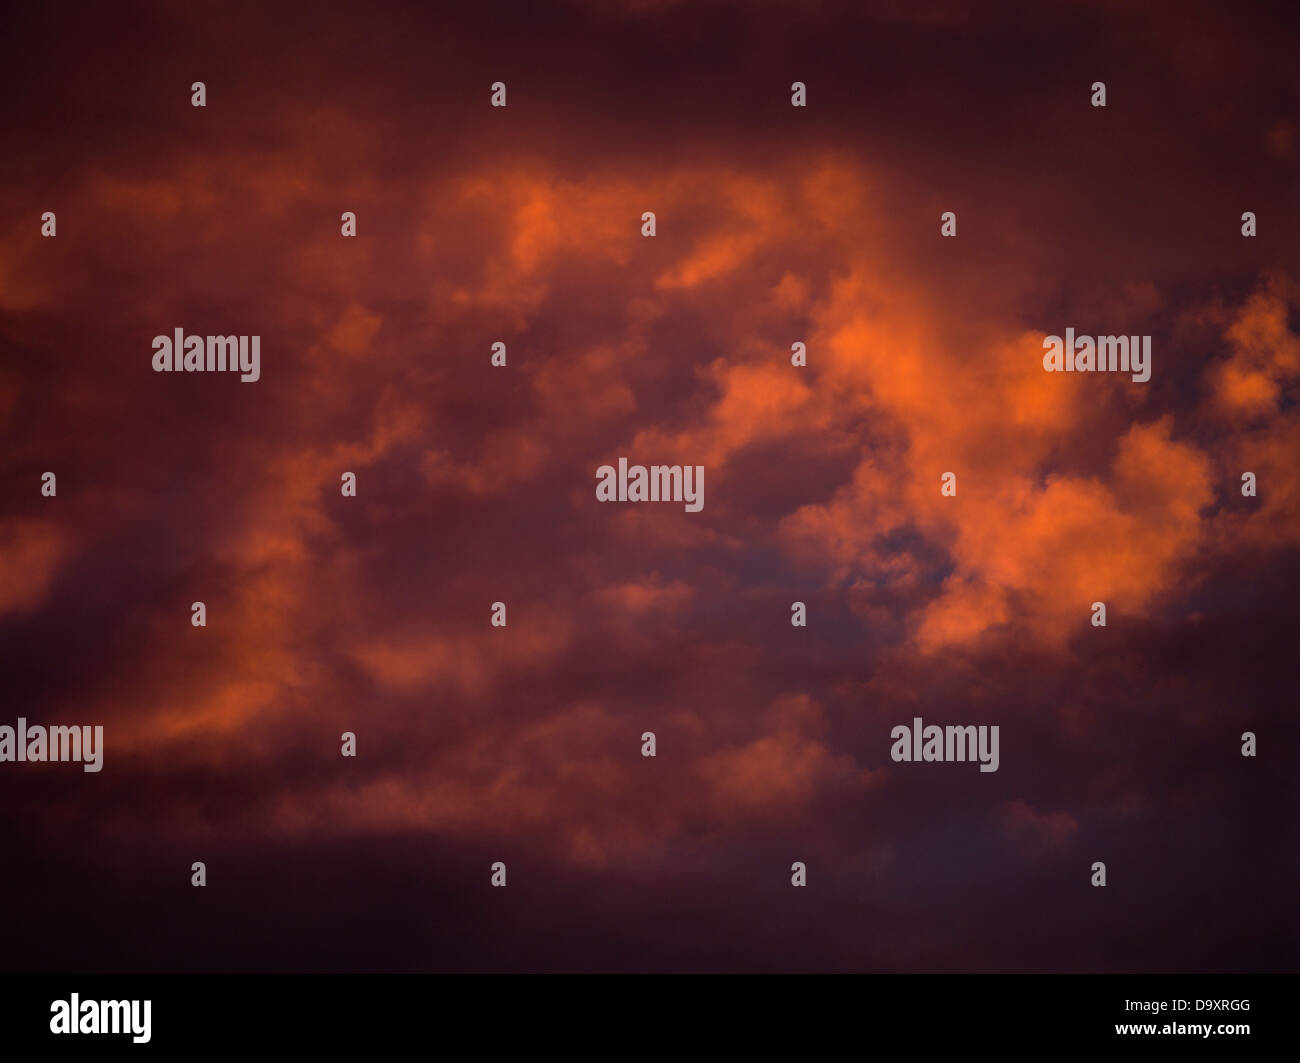 dh Abend Wolke HIMMEL WETTER Rot orange dunkel Sturm Wolken Schwarzer Himmel über Sonnenuntergang stürmischer Hintergrund atmosphärische Atmosphäre Stockfoto